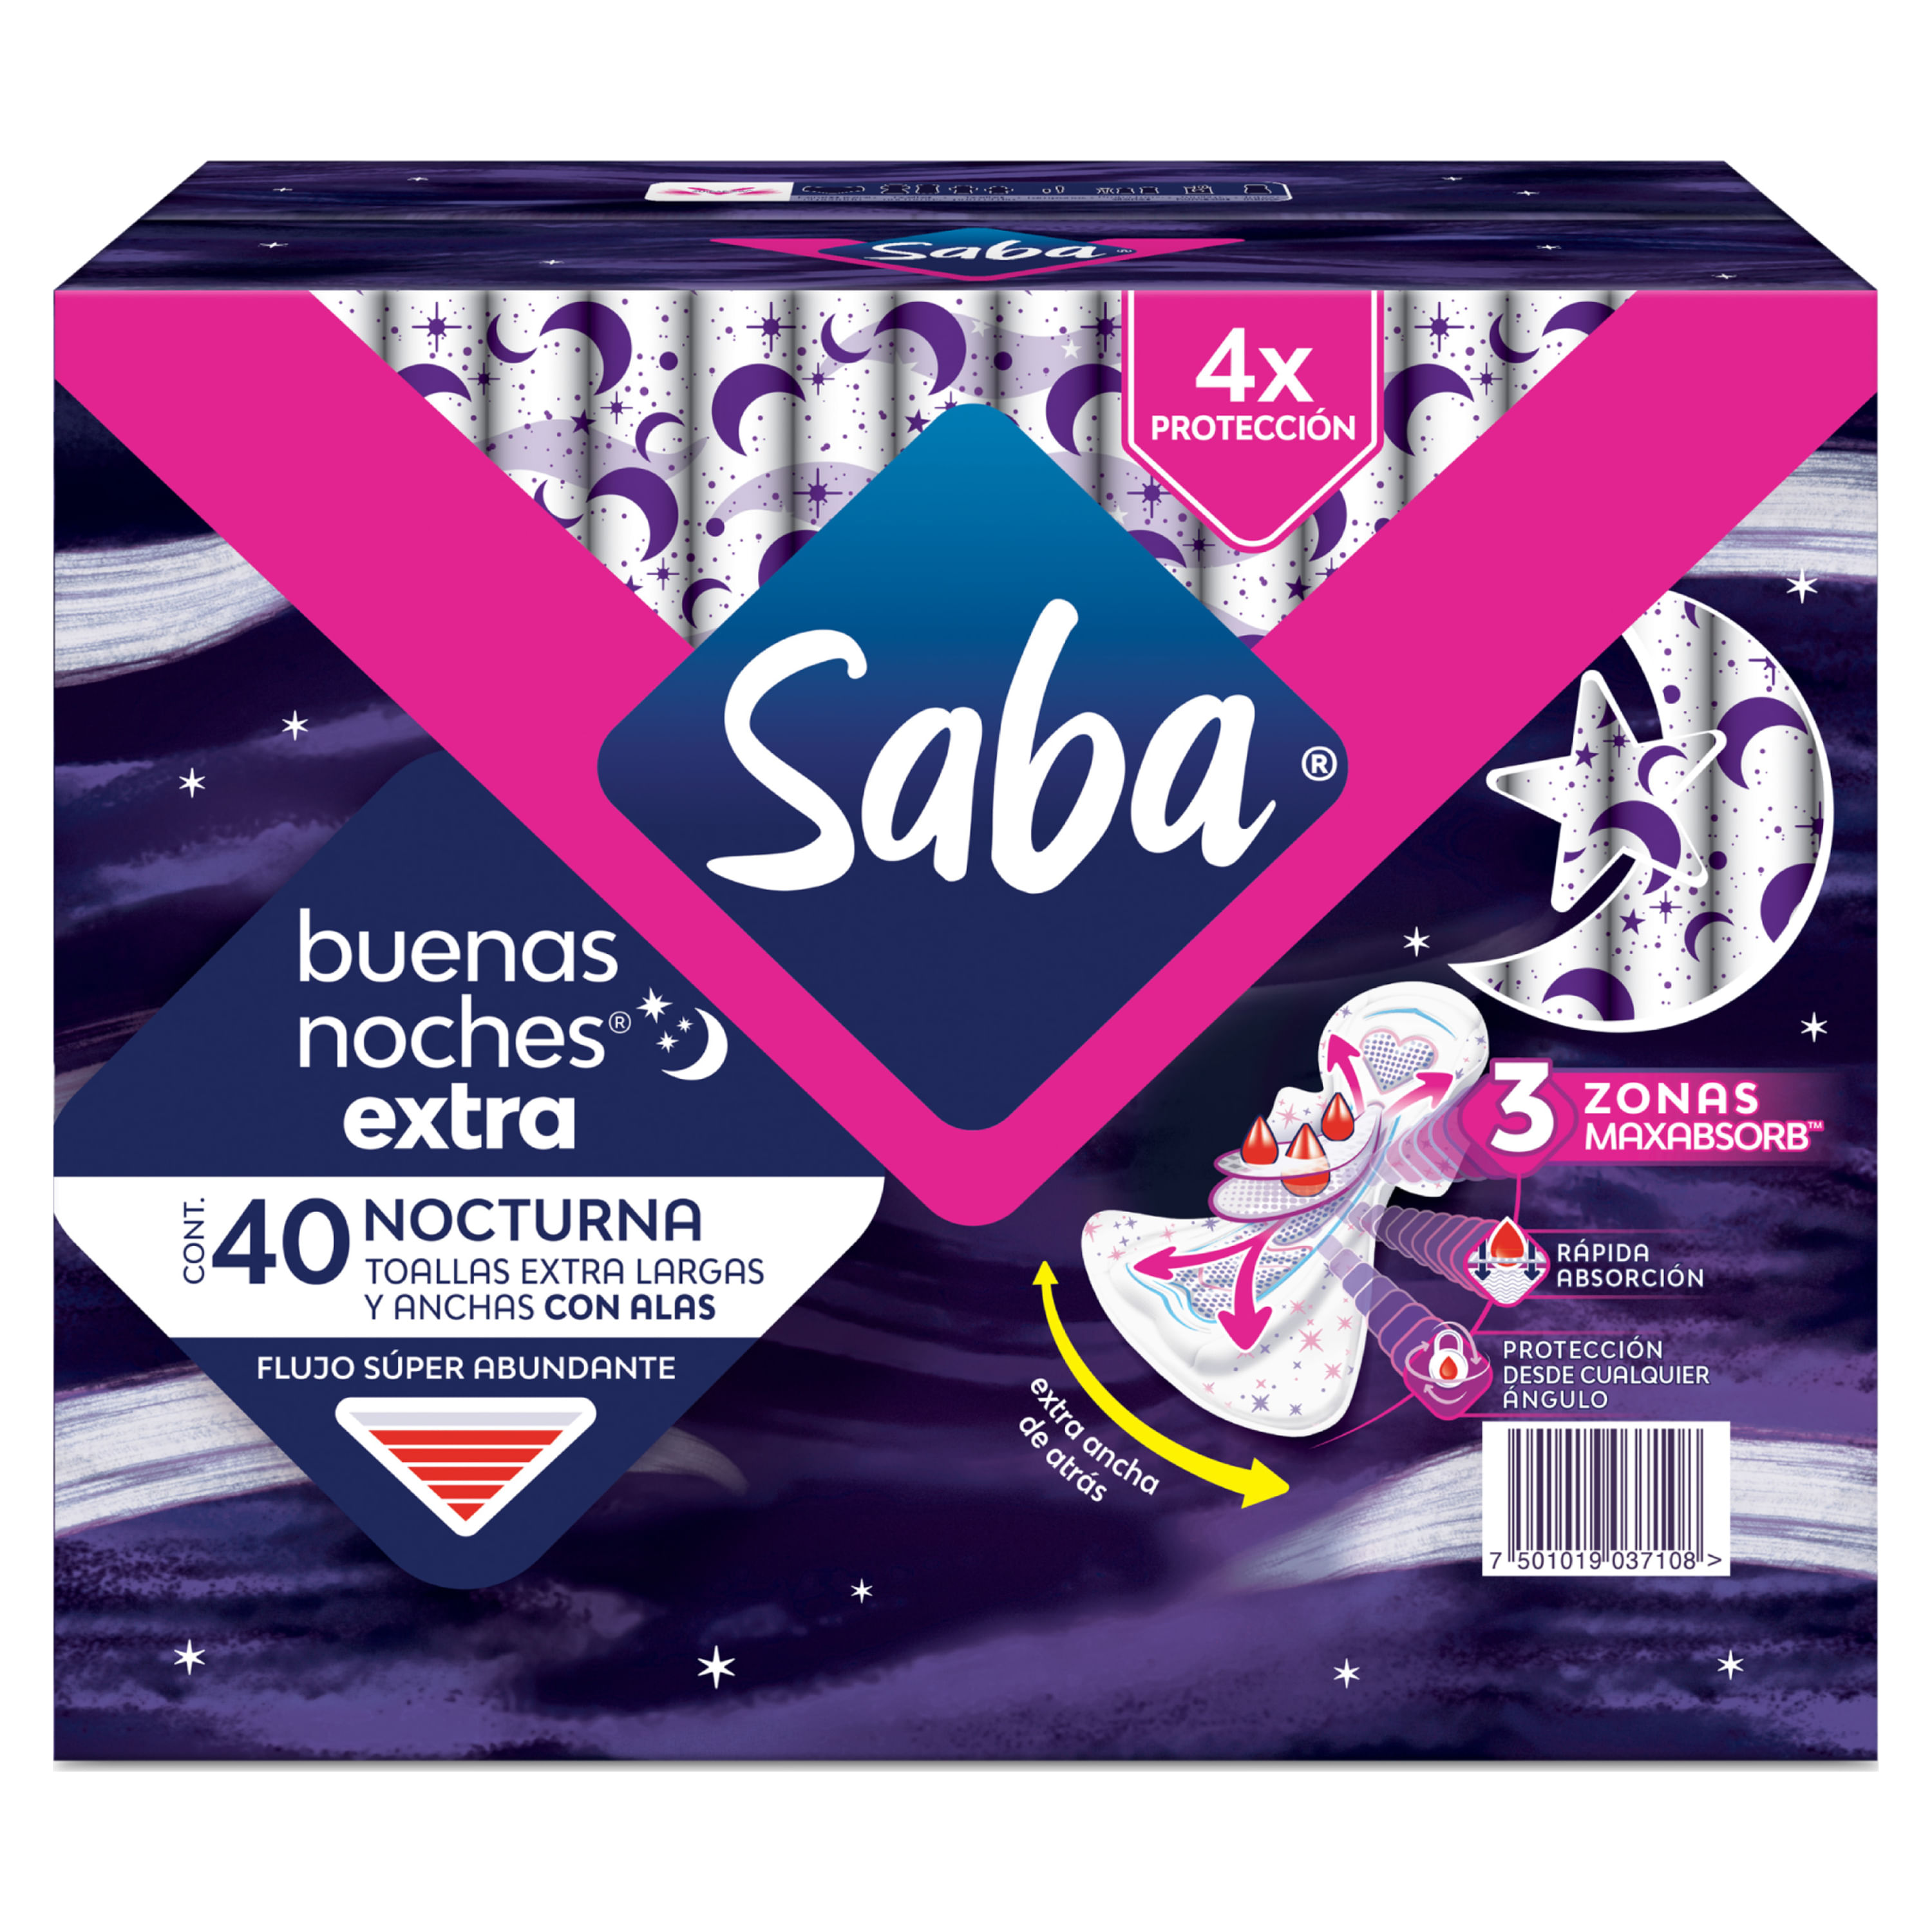 Toallas-Femeninas-Saba-Buenas-Noches-Extra-Flujo-S-per-Abundante-Con-Alas-40-Unidades-1-8801